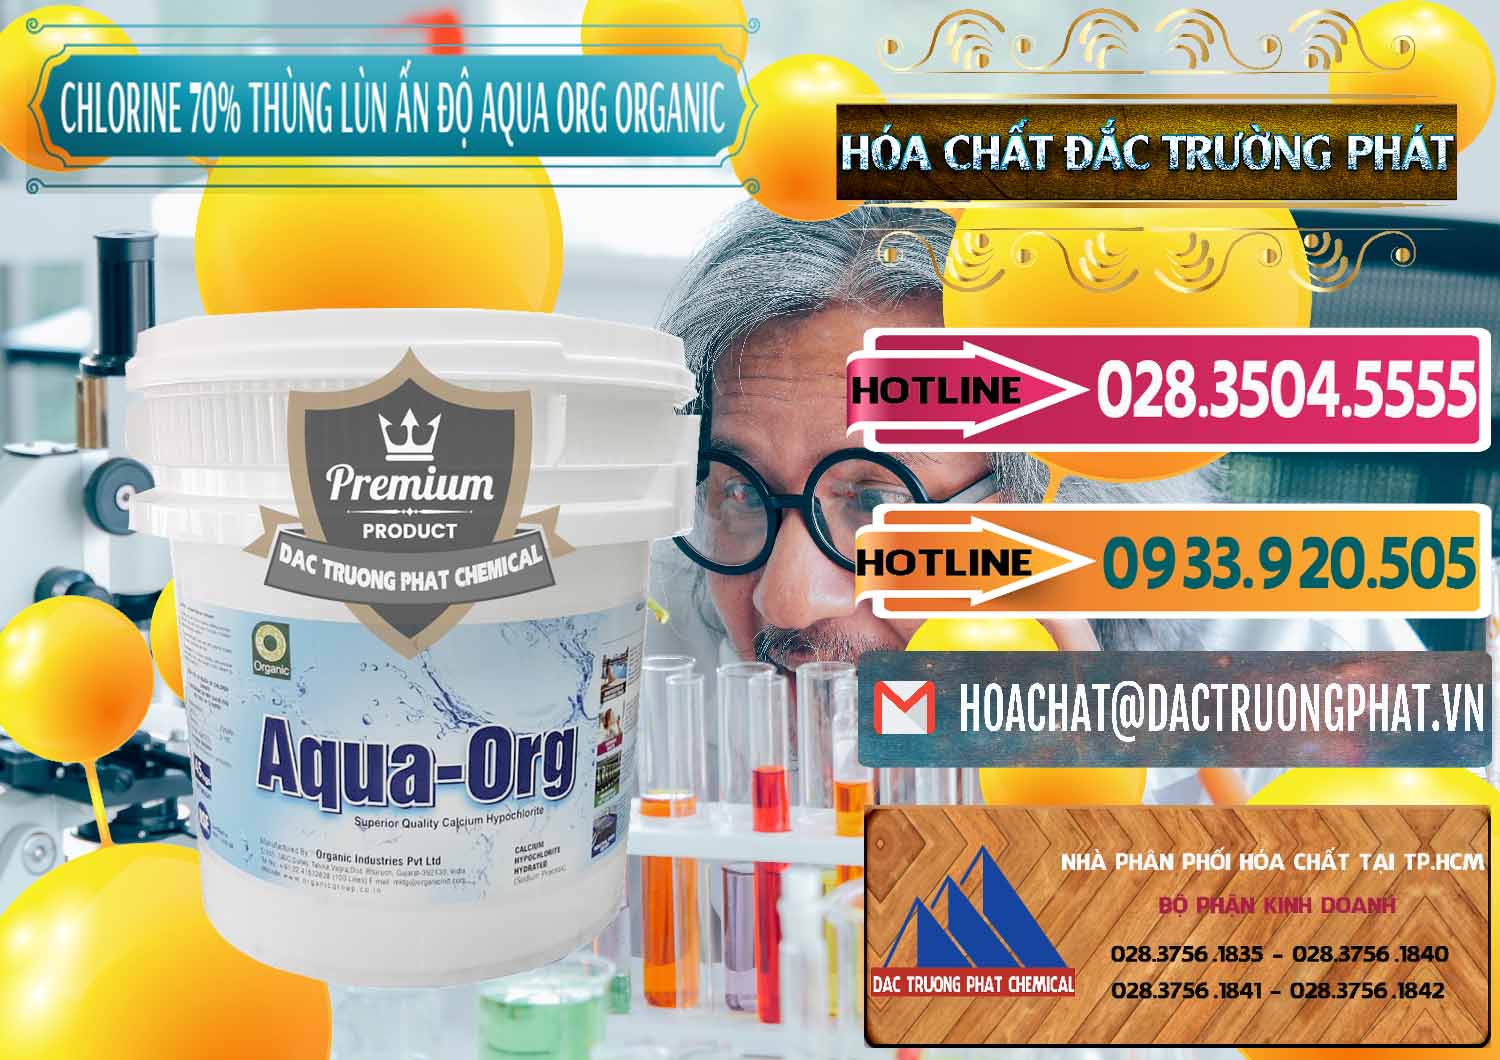 Chuyên nhập khẩu - bán Chlorine – Clorin 70% Thùng Lùn Ấn Độ Aqua ORG Organic India - 0212 - Nhà phân phối & bán hóa chất tại TP.HCM - dactruongphat.vn